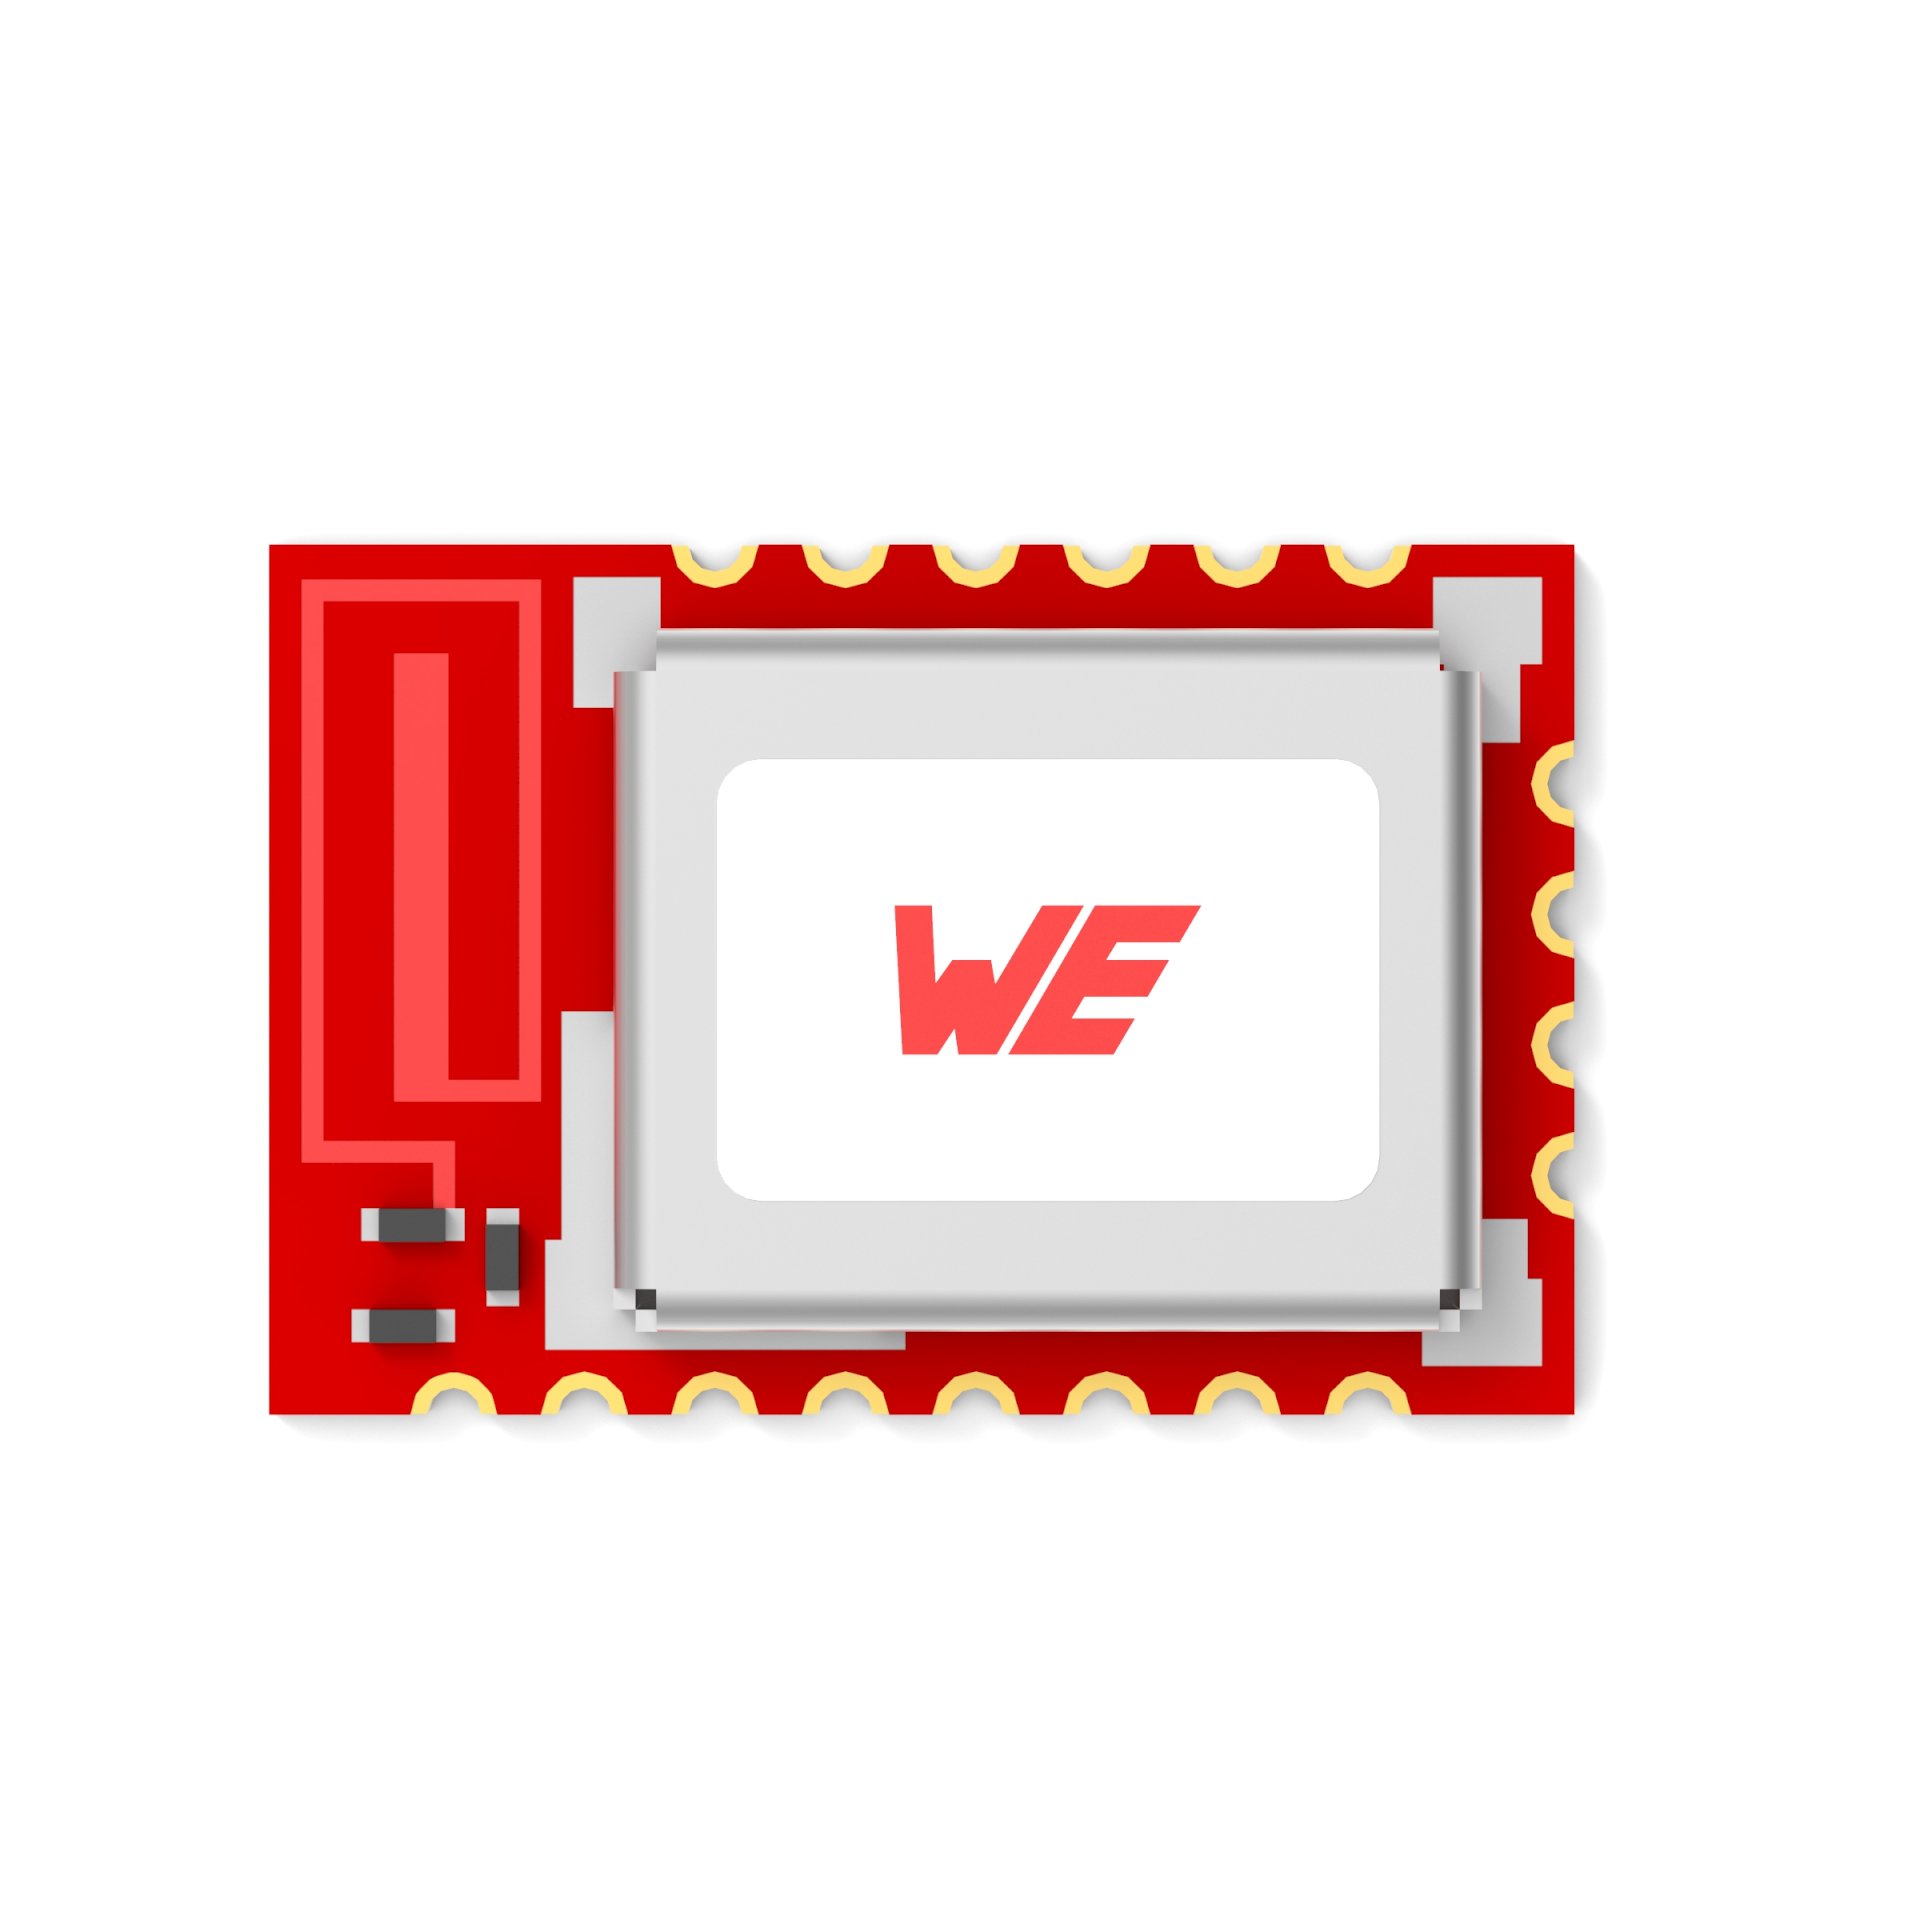 Würth Elektronik and Wirepas cooperate